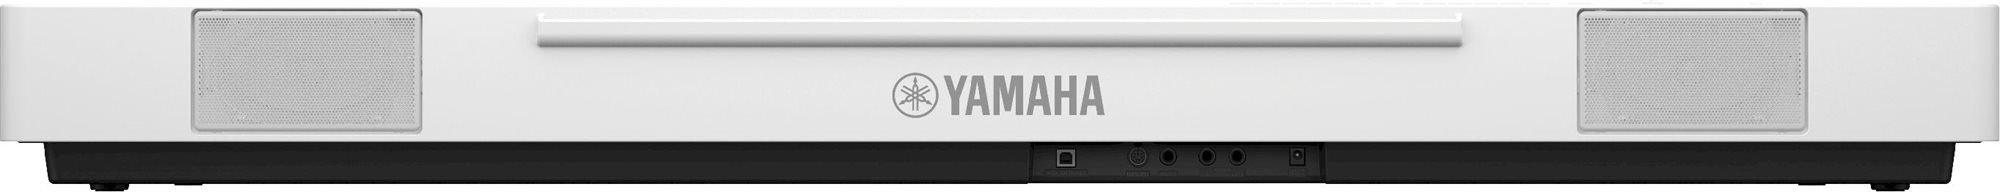 yamaha-p-225-wh.6